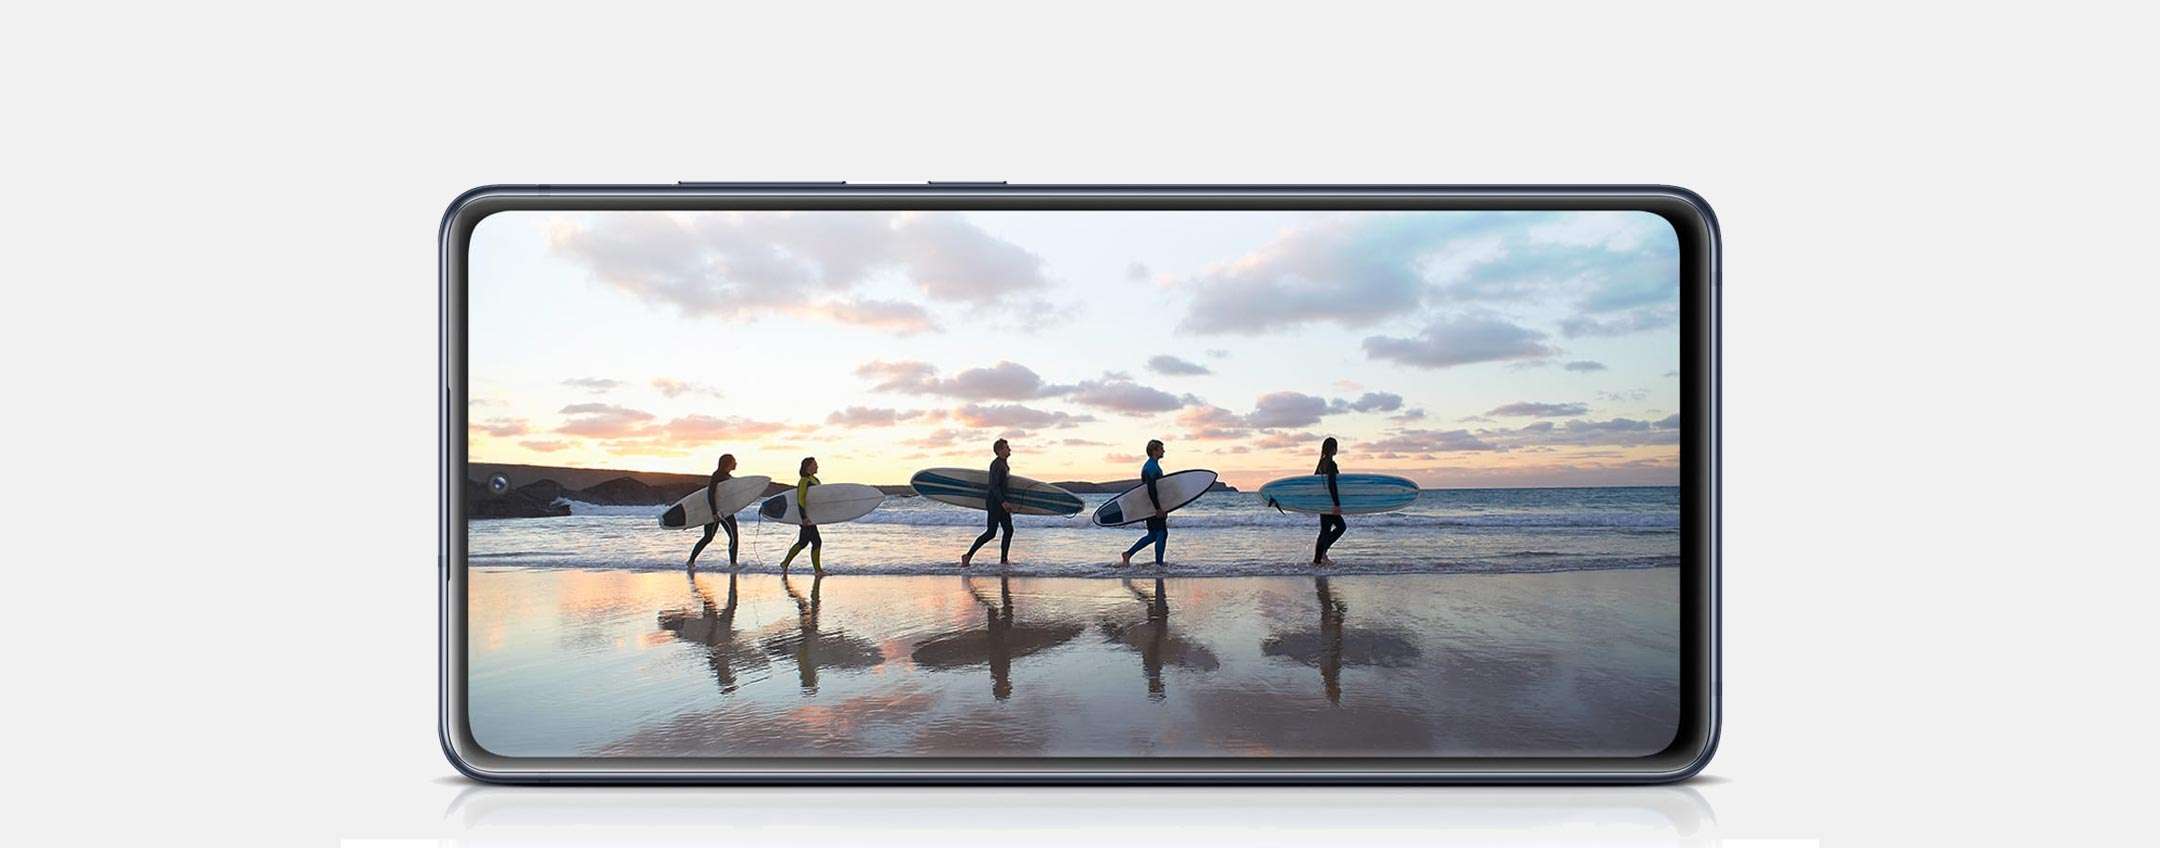 Samsung Galaxy S20 FE si aggiorna: le novità dell'update